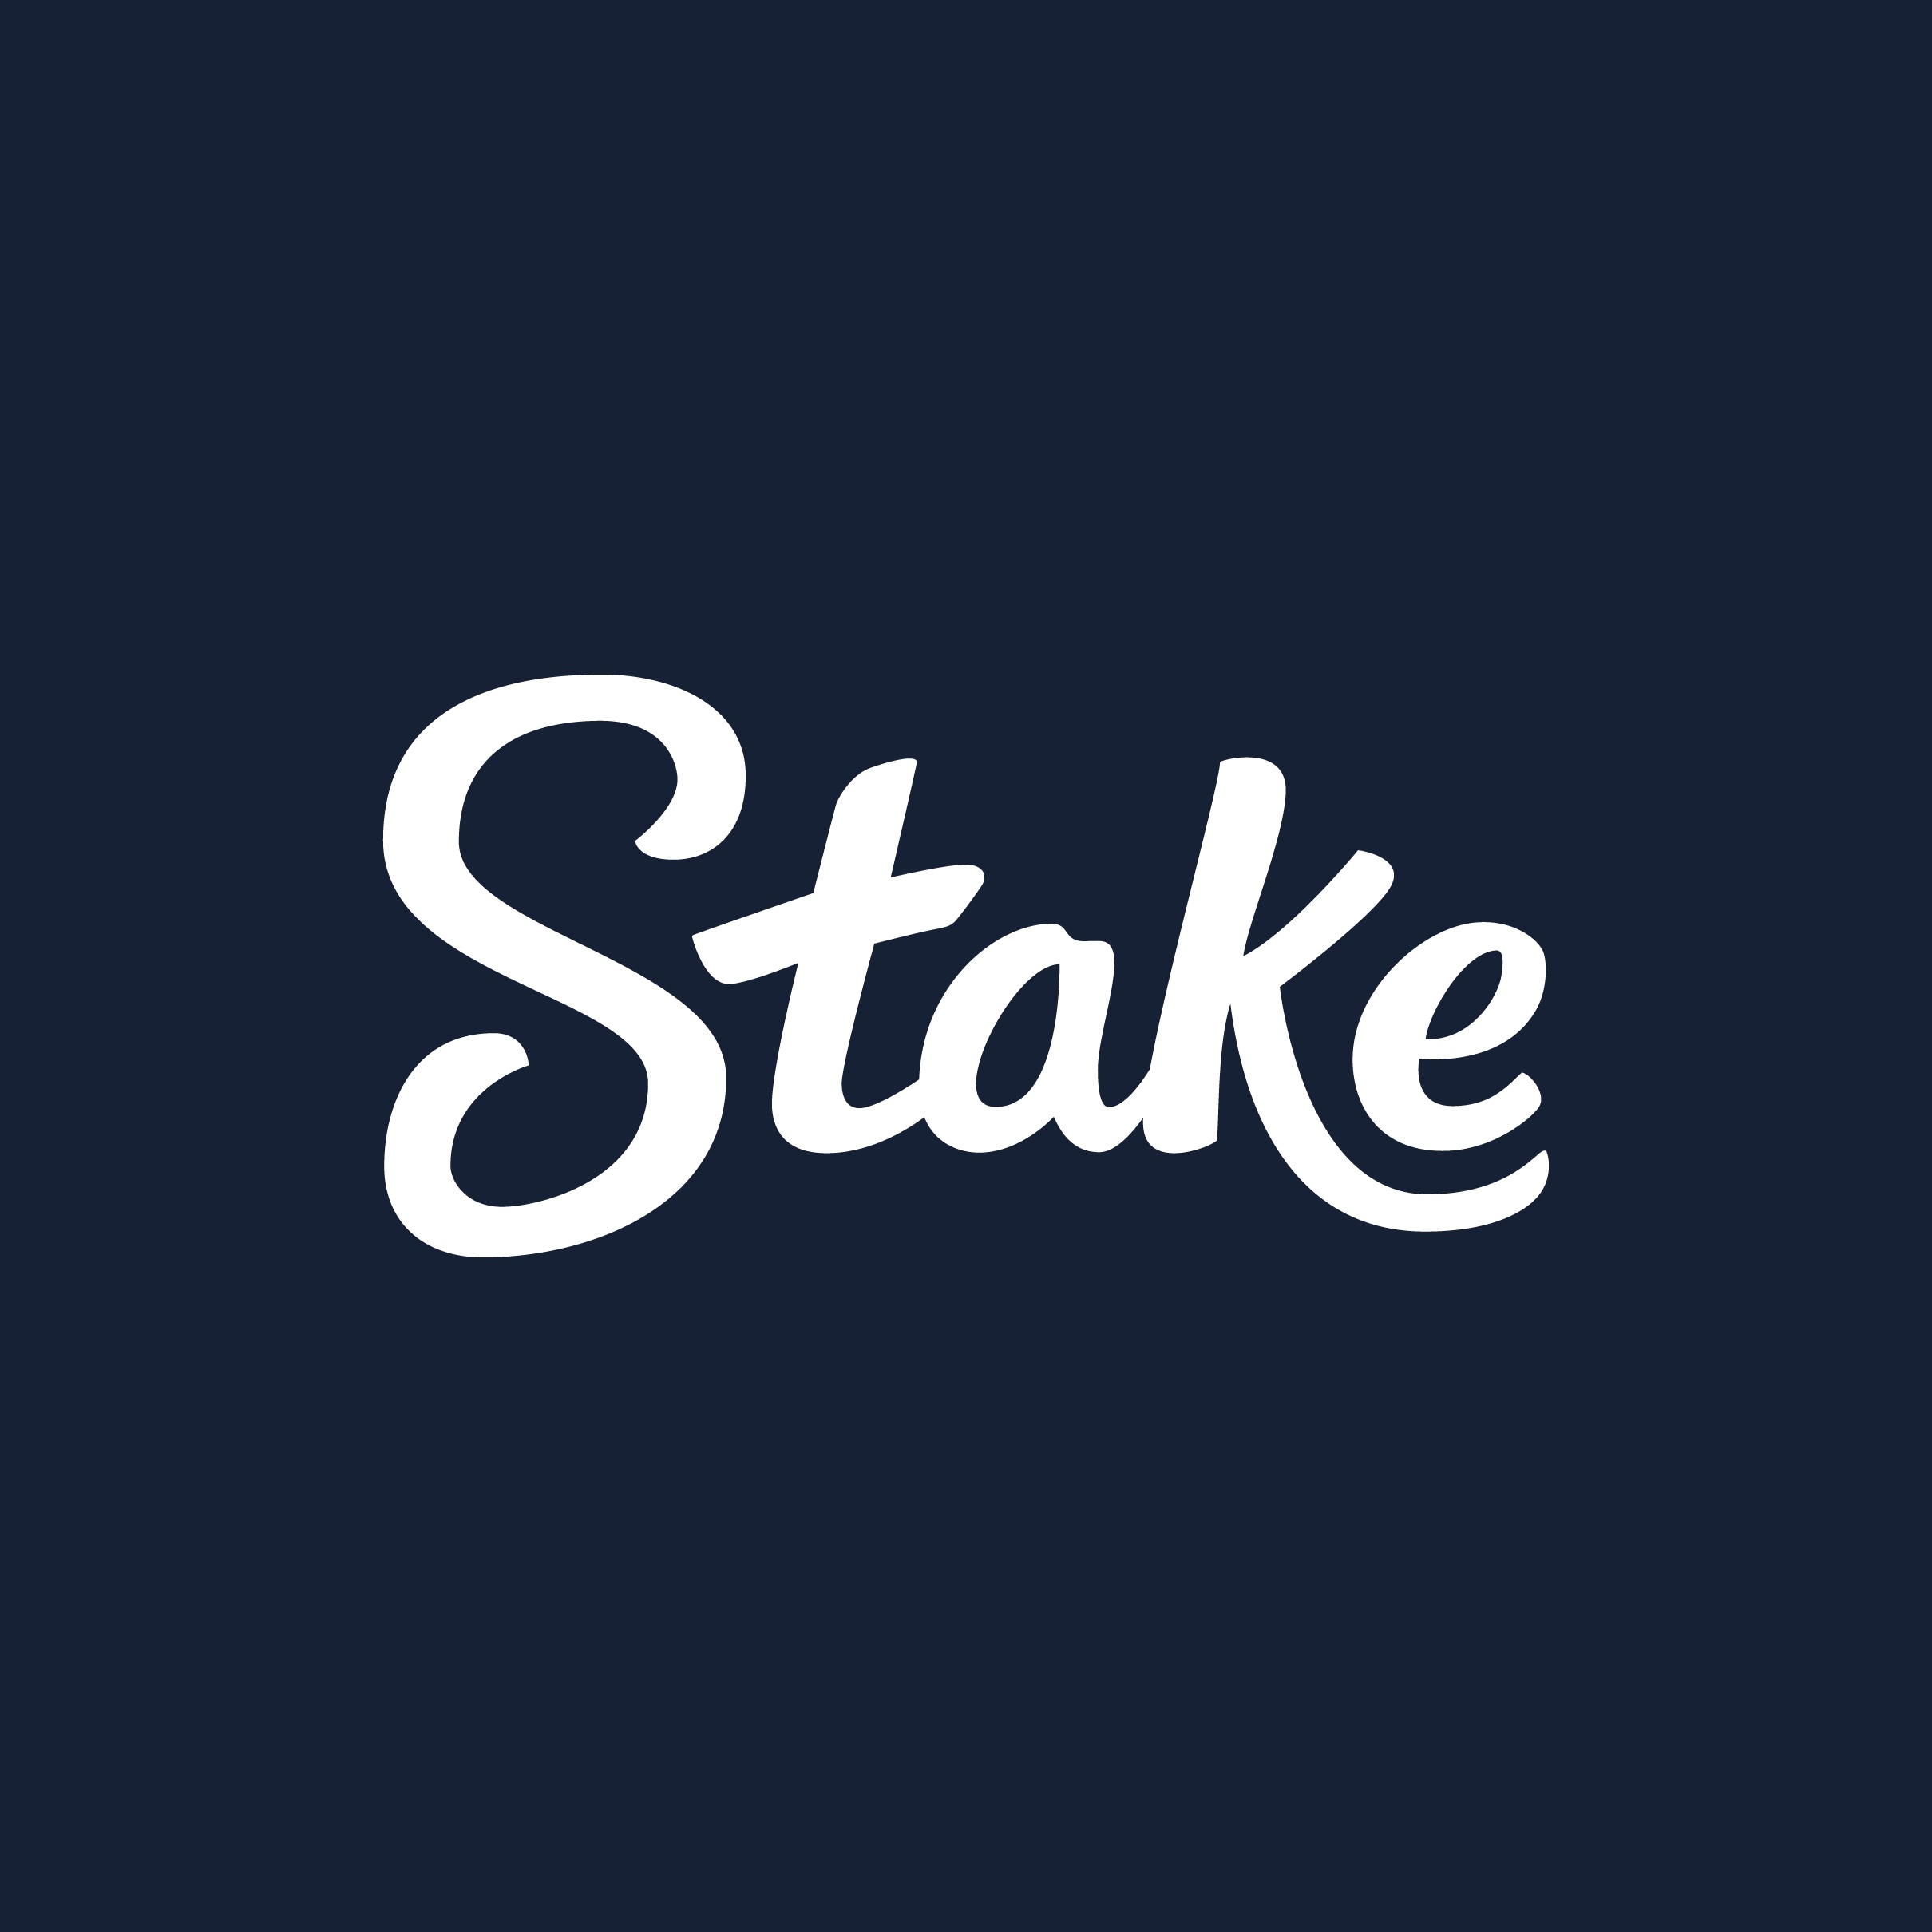 Stake.com logo